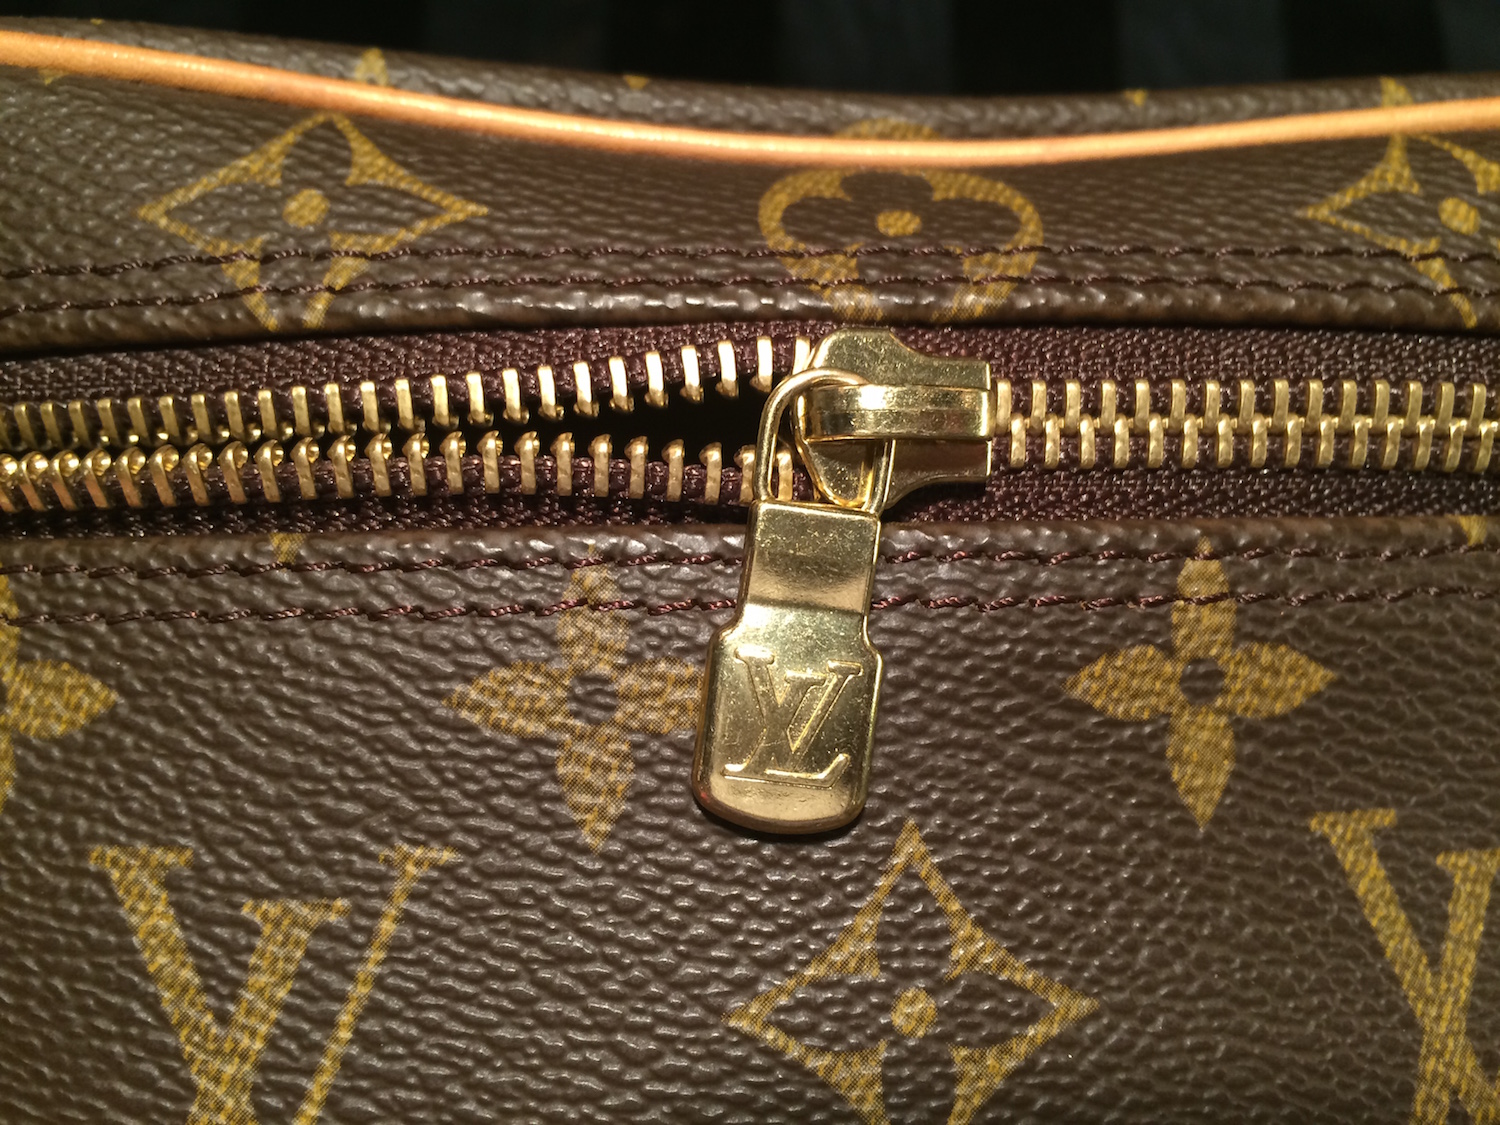 Authentic Louis Vuitton Monogram Square Pouch Bag w/ Handle